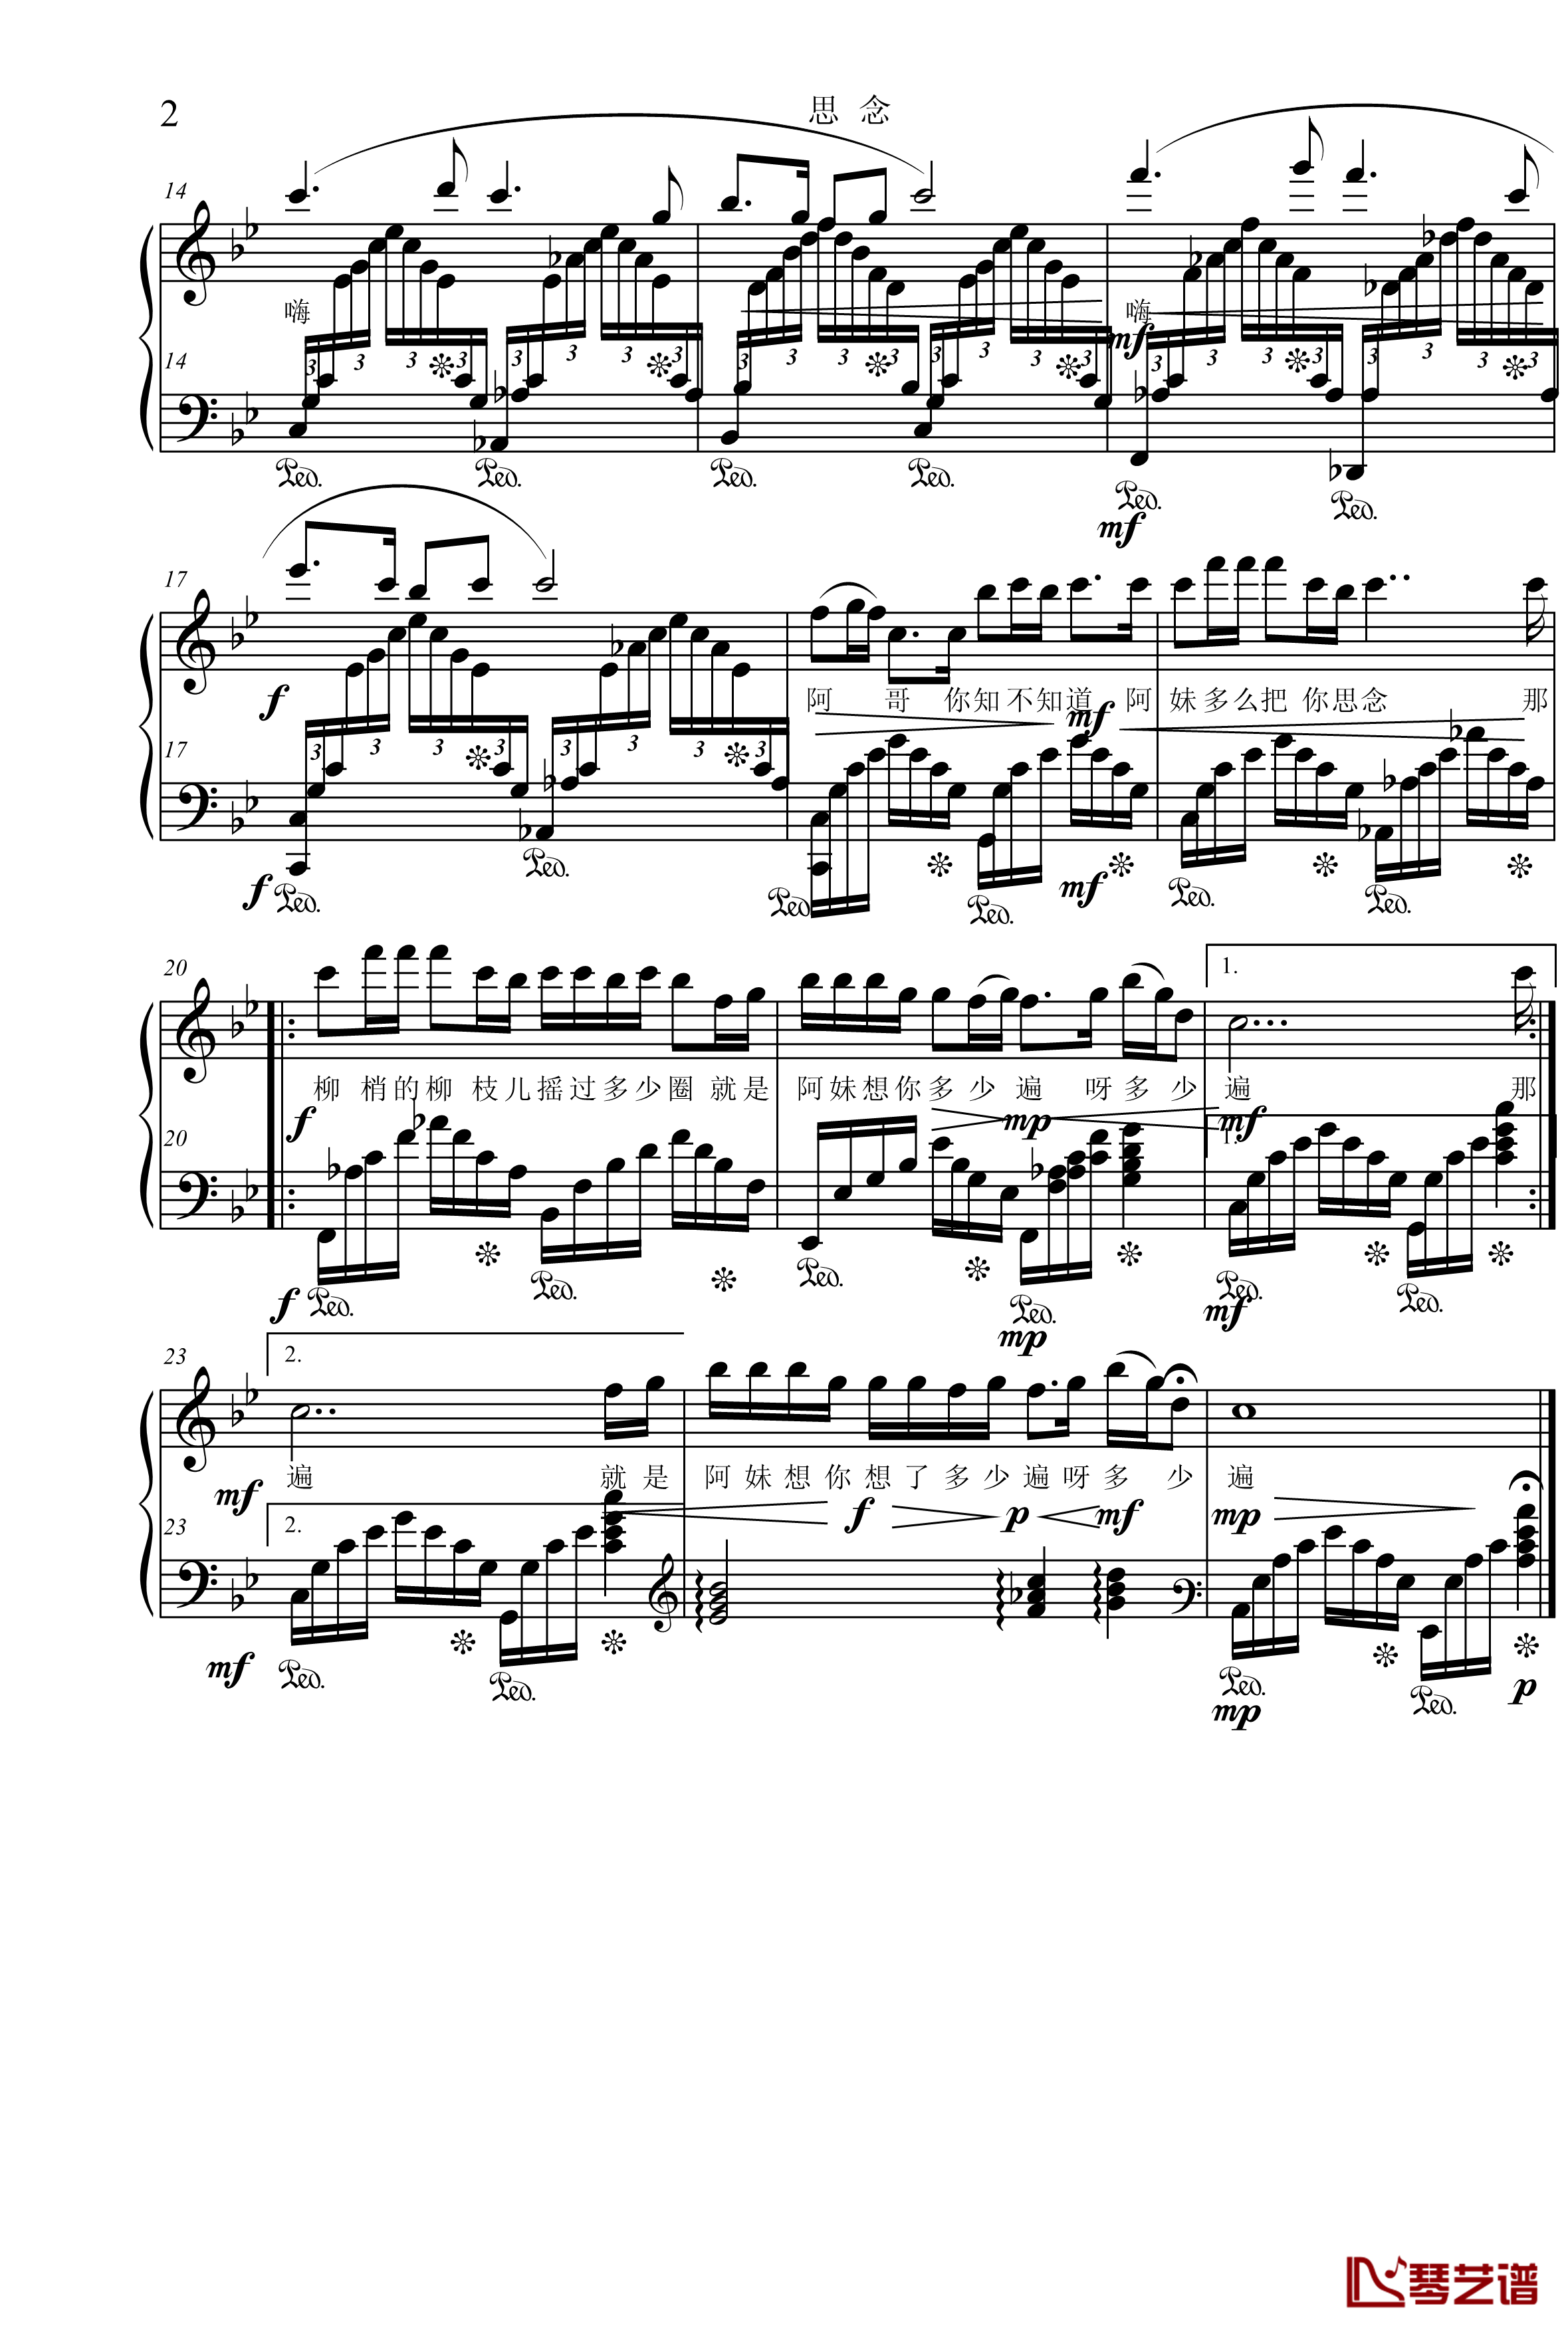 思念钢琴谱-项海波-音乐作品第1393号-单二部民族声乐2